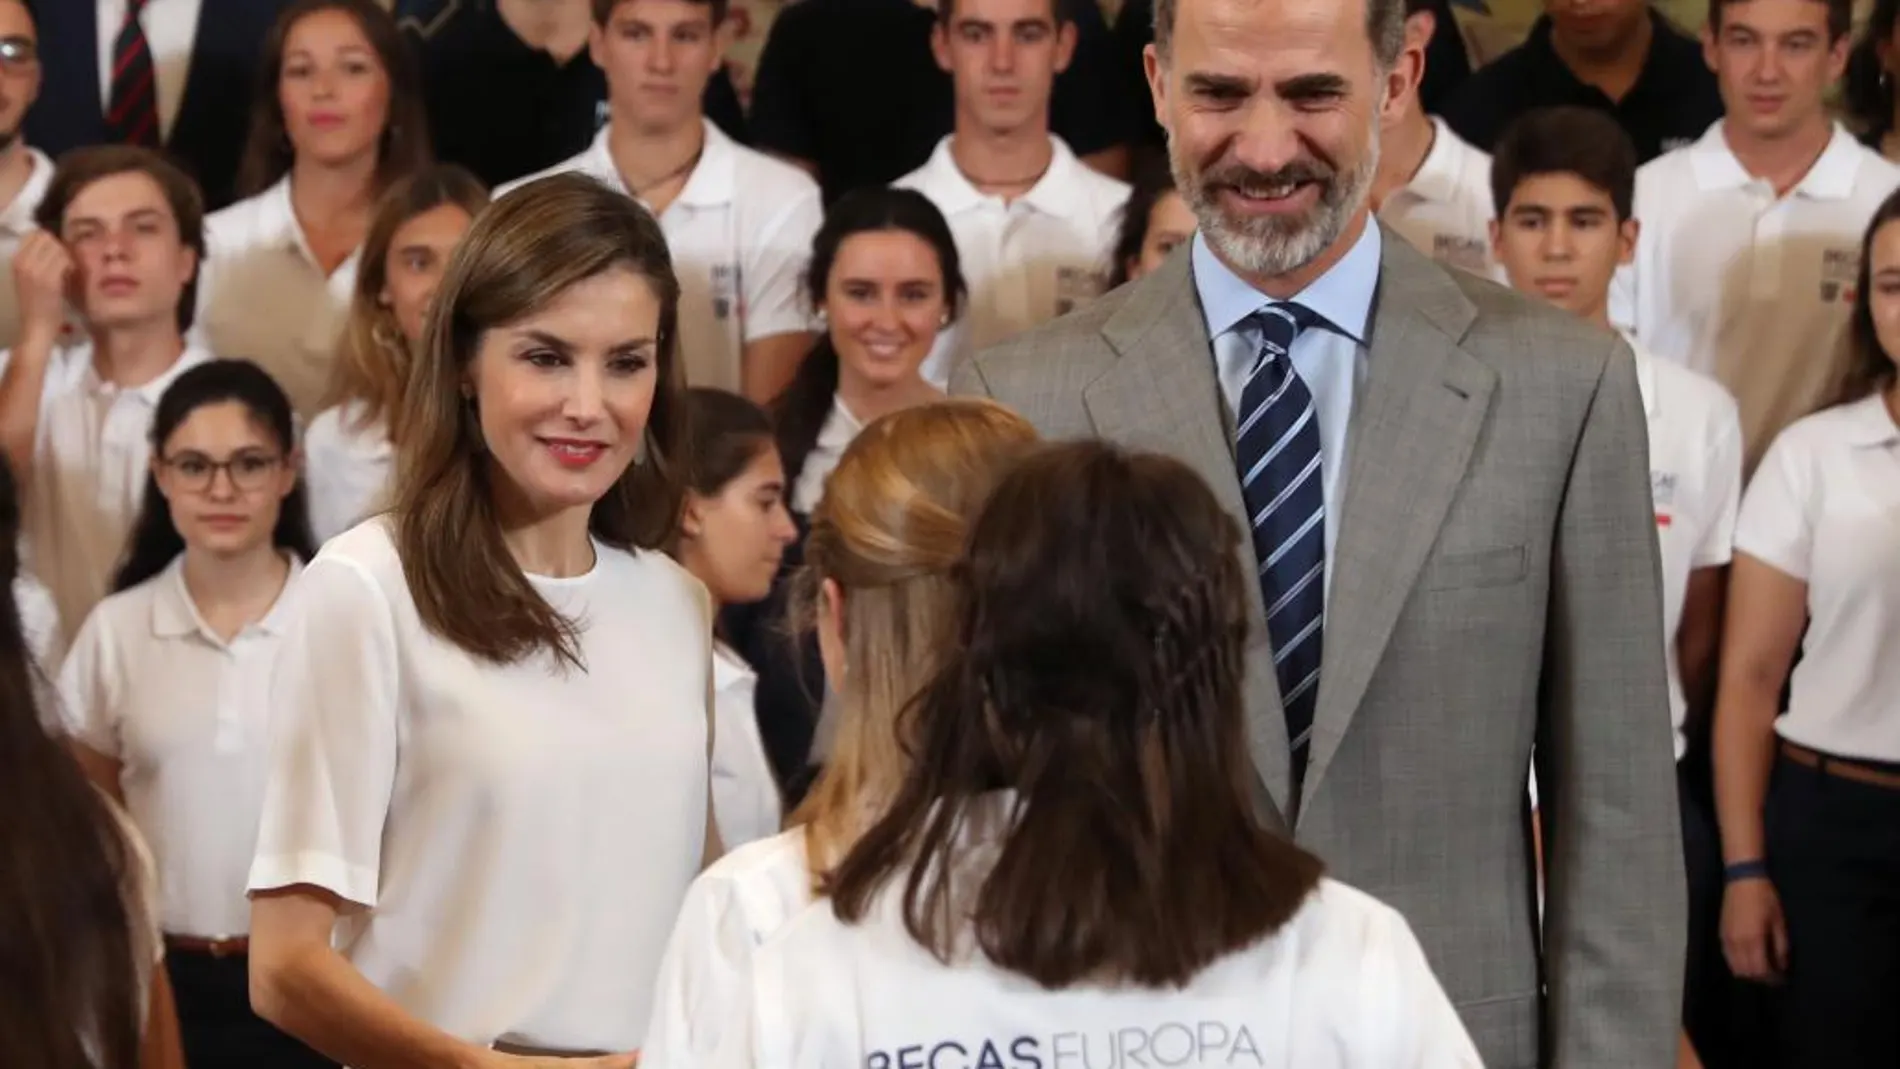 El Rey Felipe VI y la Reina Letizia saludan a los 50 jóvenes participantes en la XII edición del Programa "Becas Europa"de la Universidad Francisco de Vitoria que han recibido hoy en el Palacio de La Zarzuela